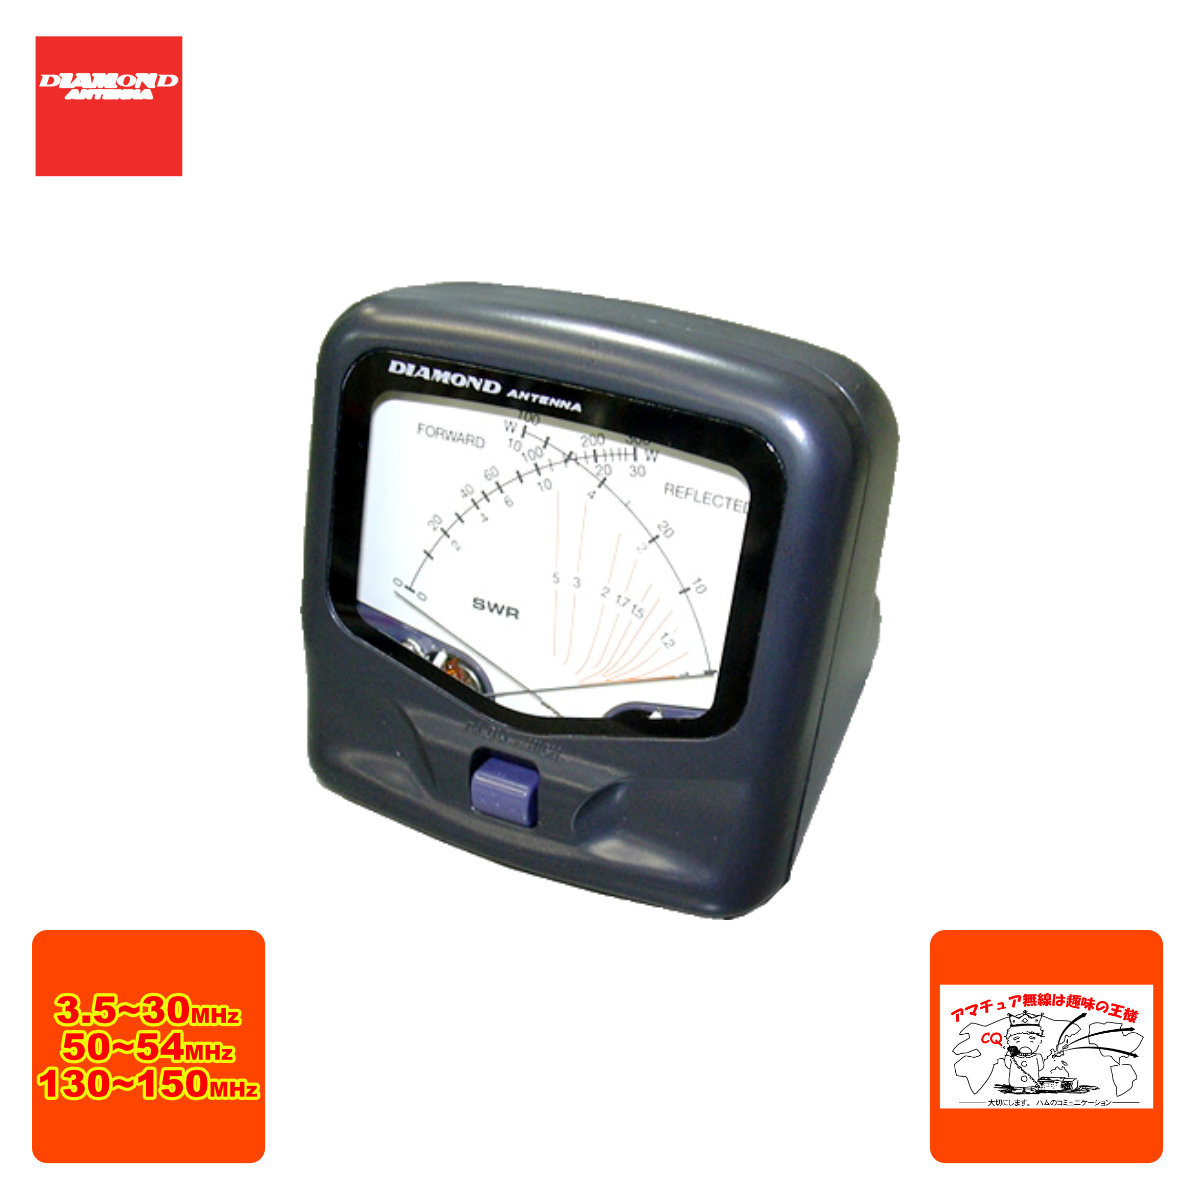 第一電波工業 DIAMOND クロスニードルSWRパワー計 SX20C アマチュア無線用品の商品画像